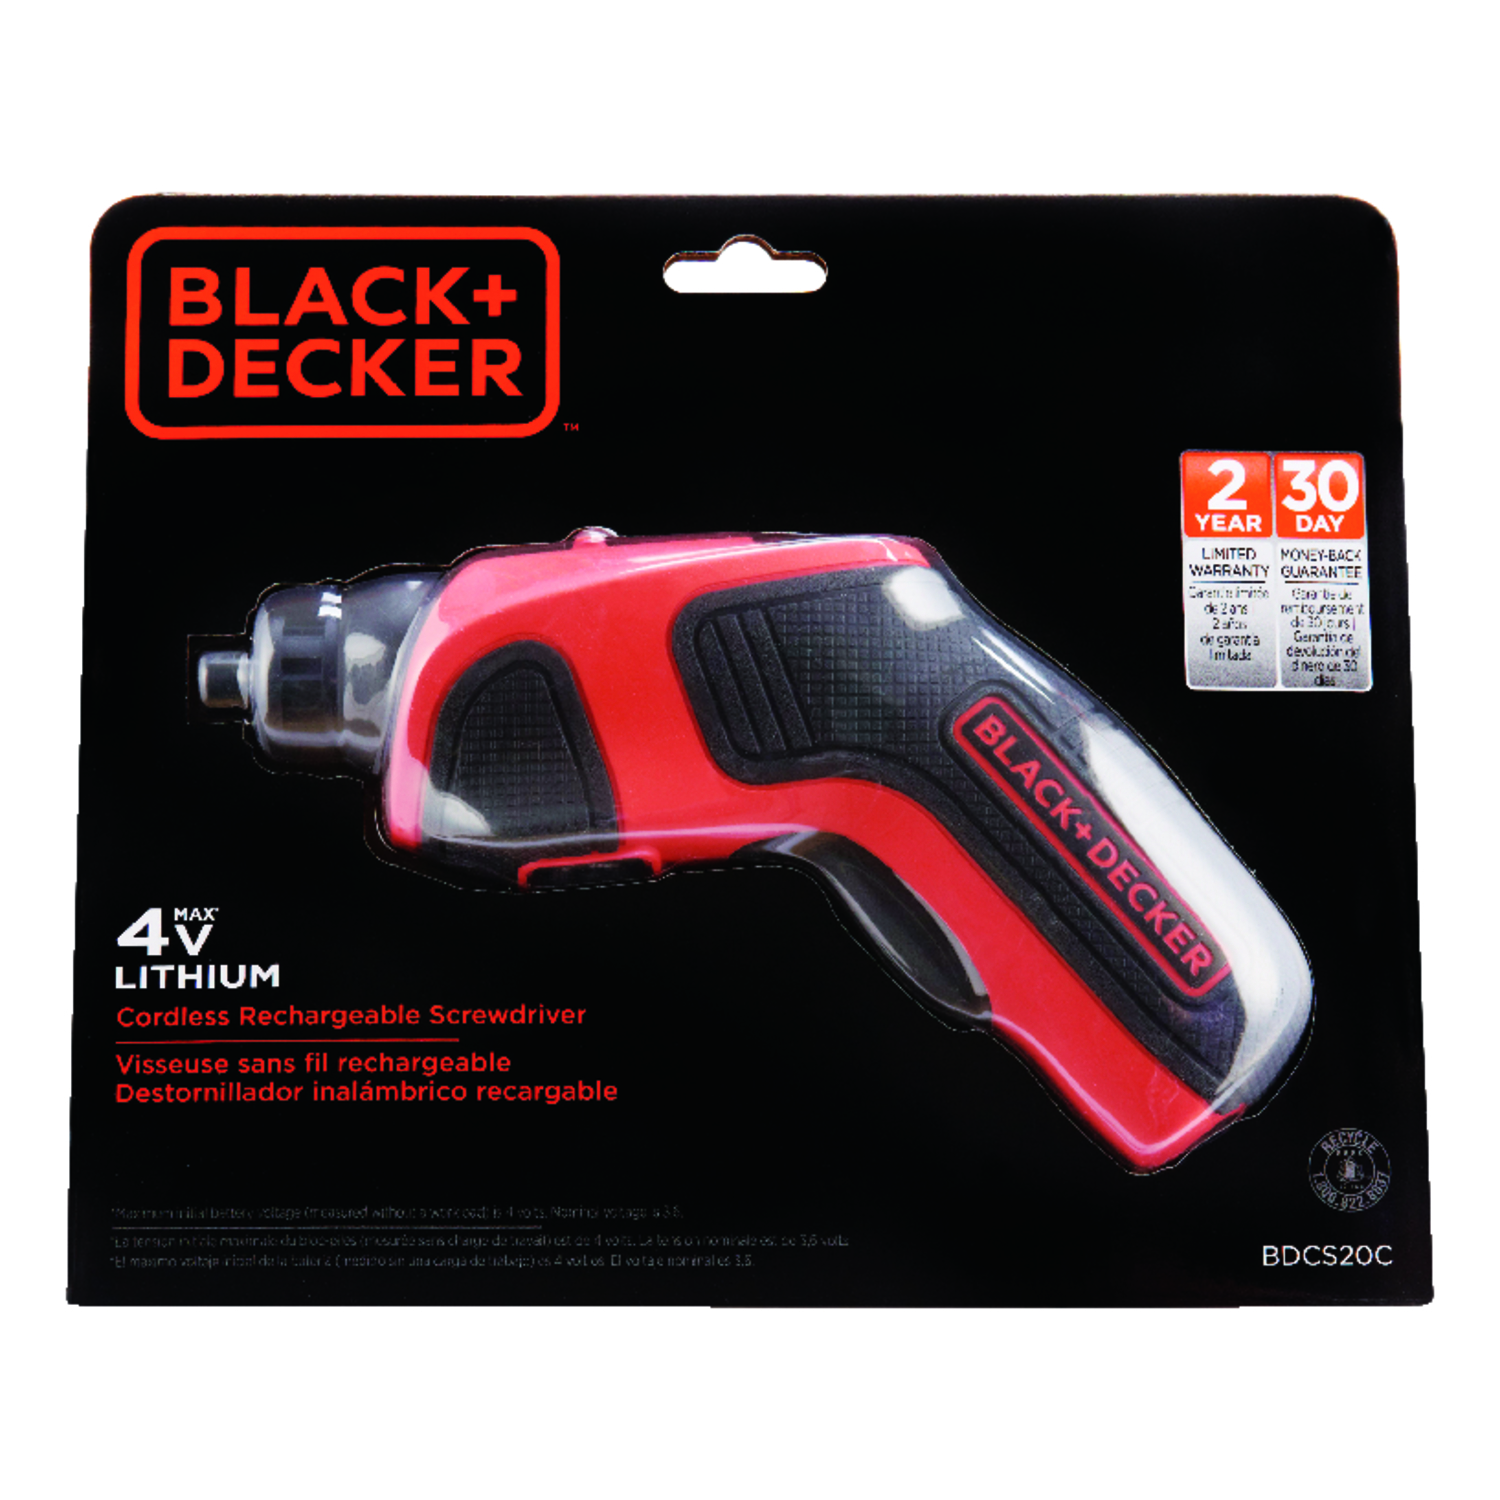  BLACK+DECKER 4V MAX* Cordless screwdriver (BDCS20C